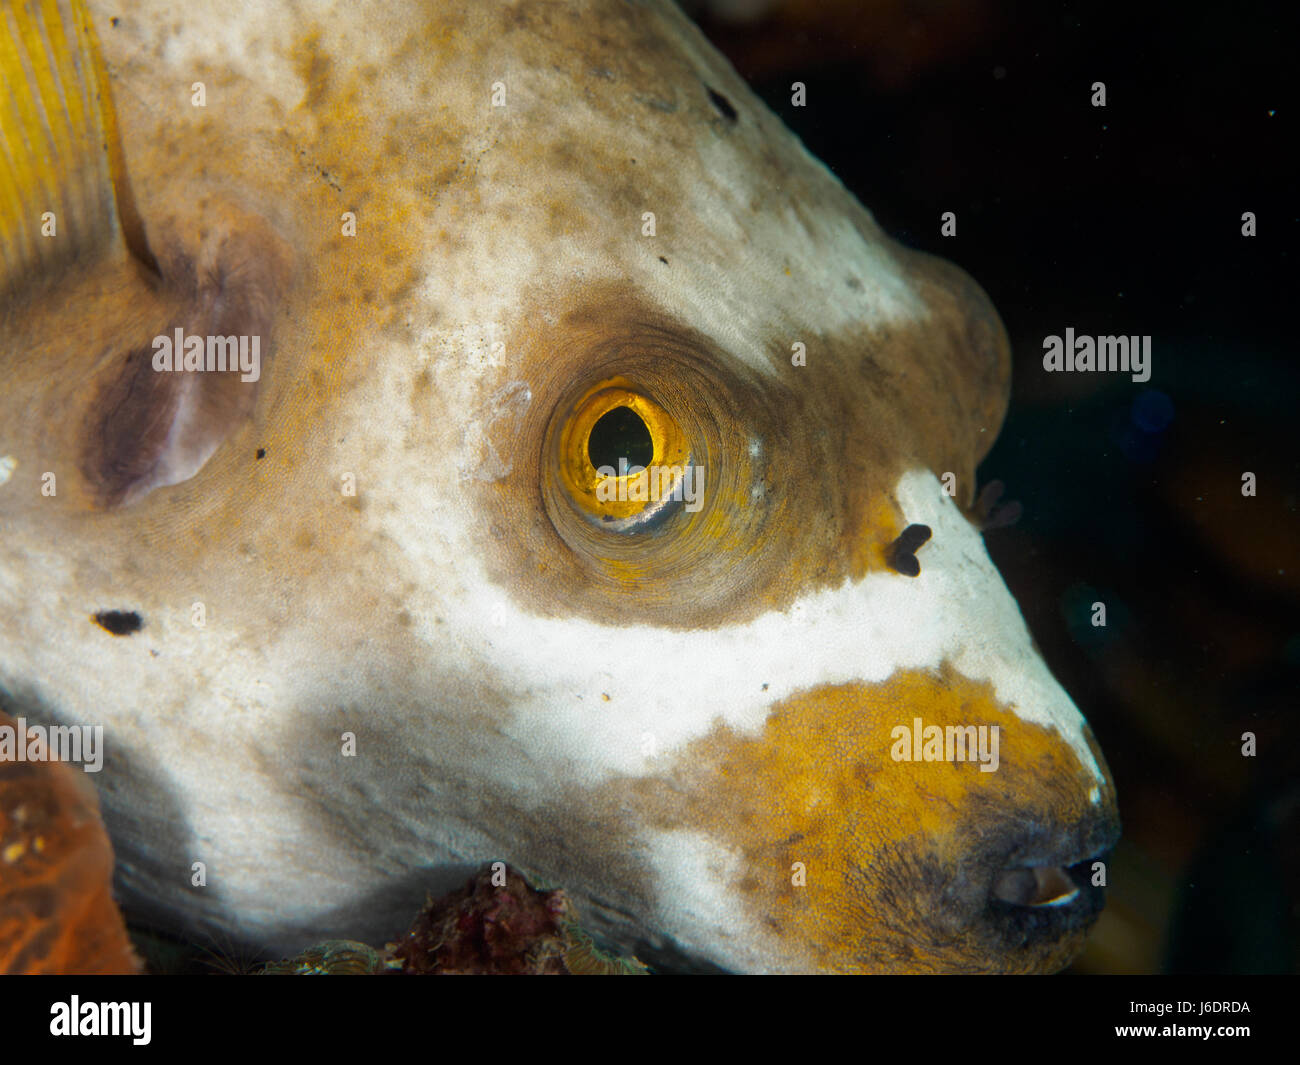 Underwater, Close-up of Puffer fish Stock Photo